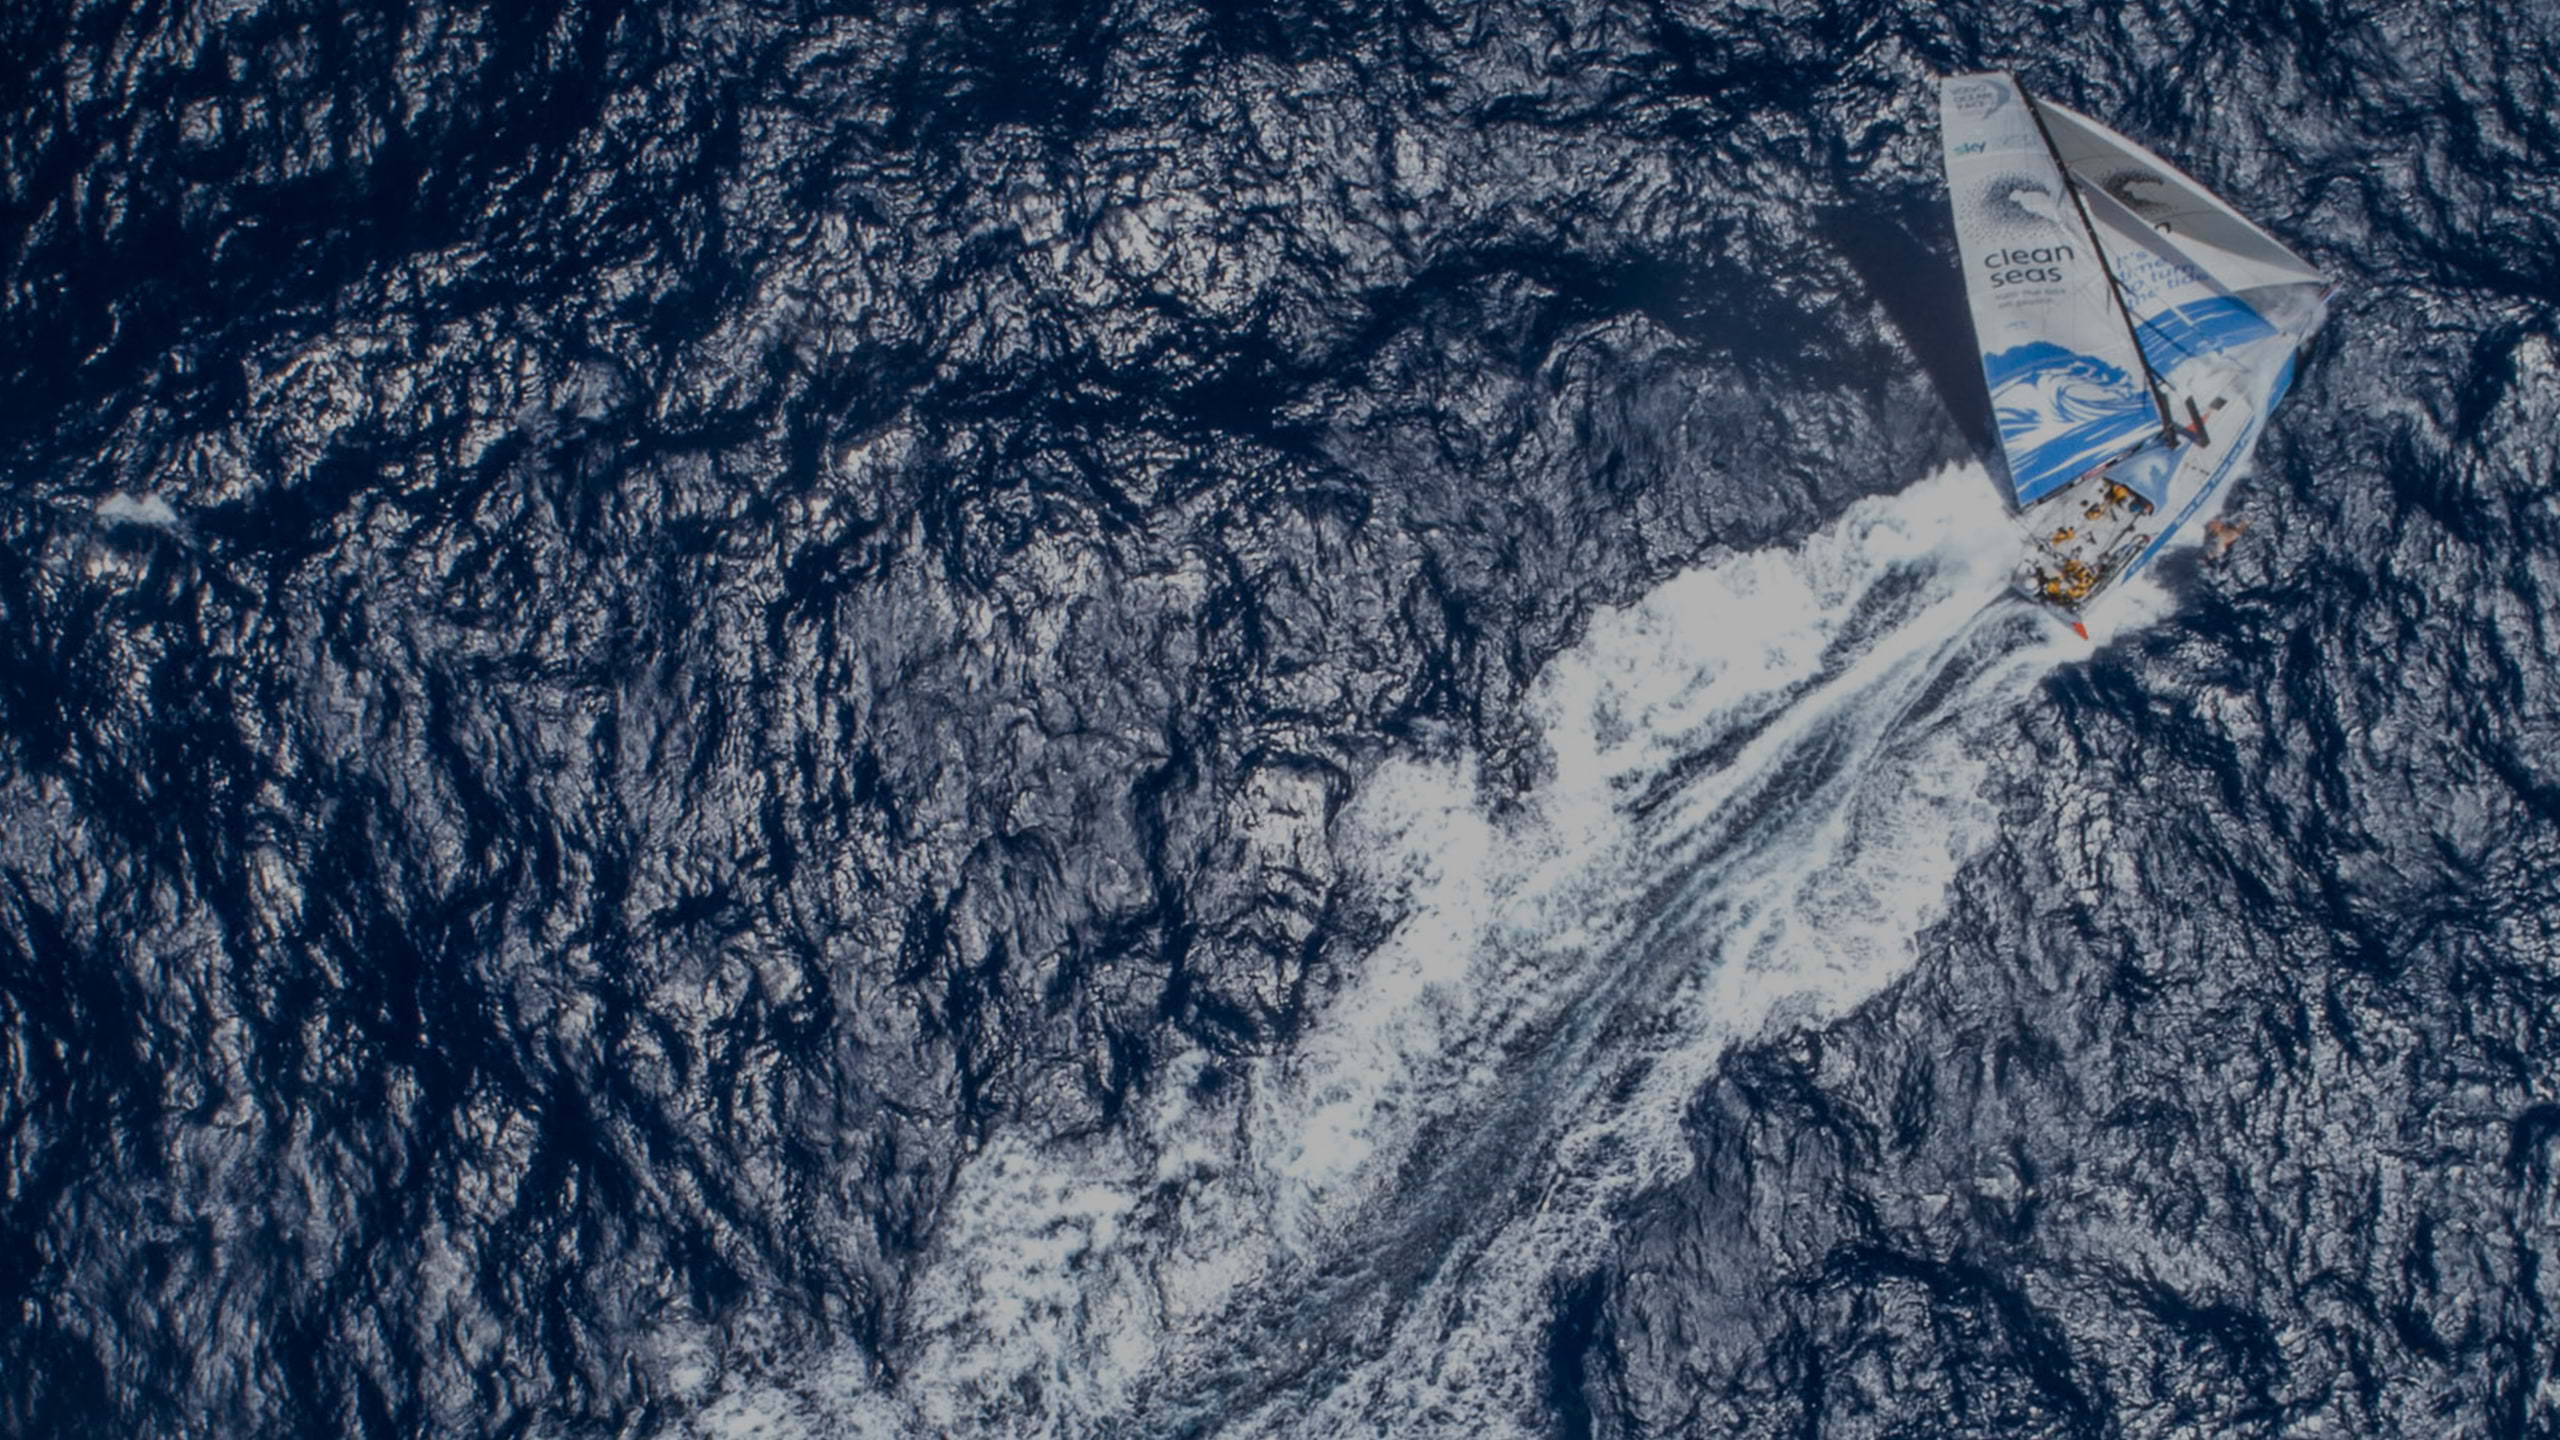 Visão de um pássaro das calmas águas no oceano, com um veleiro no centro deixando um rastro branco ondulado na água azul.